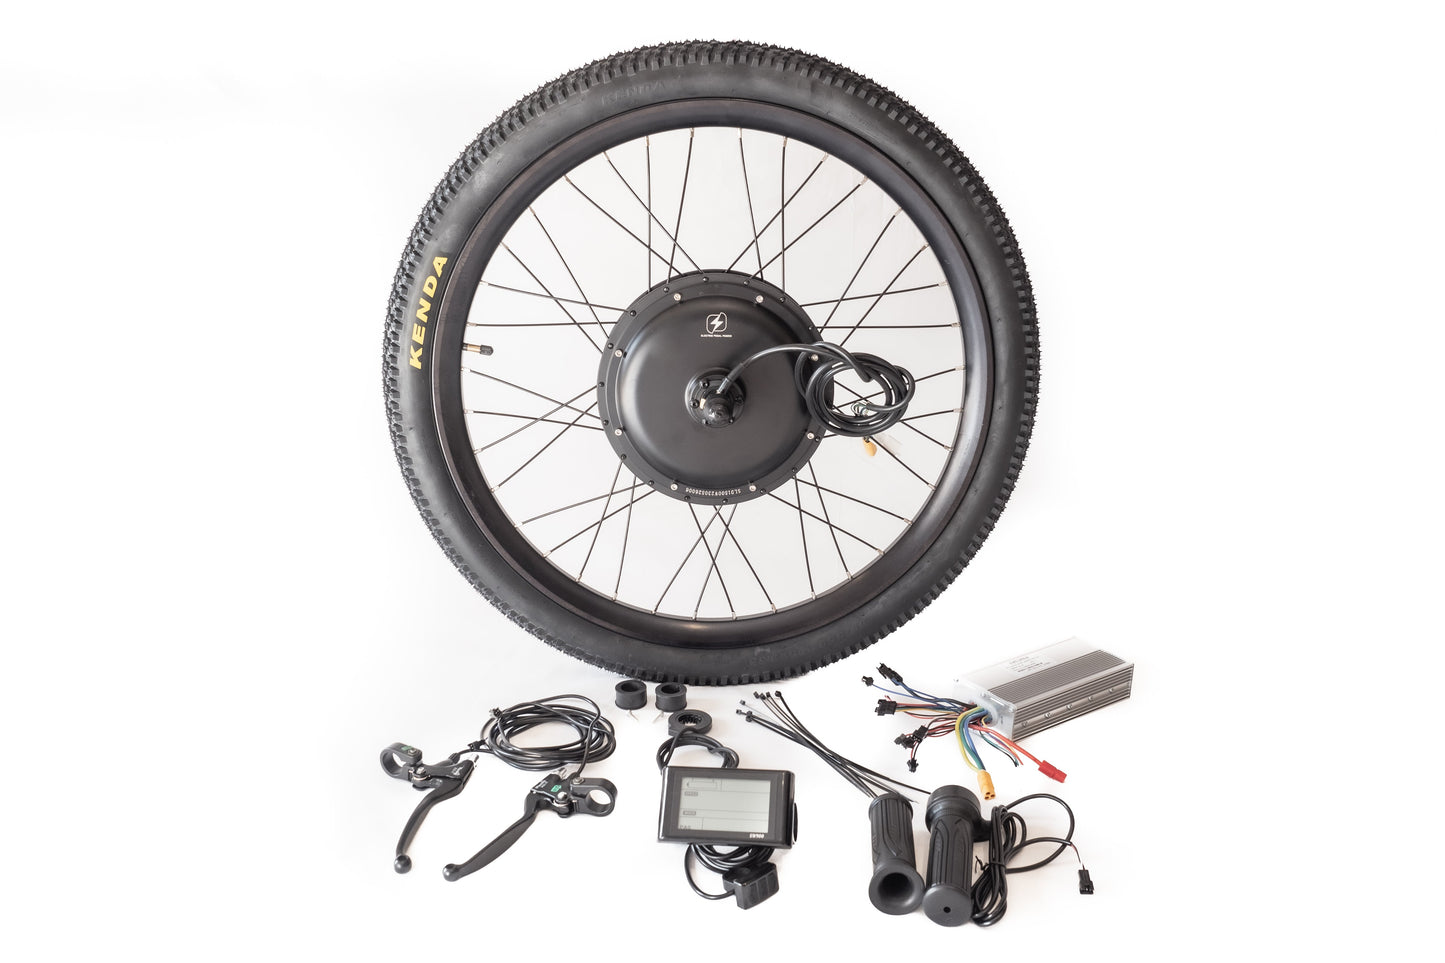 26 inch 48V 52V 1500W rear electric bike kit - hub motor wheel